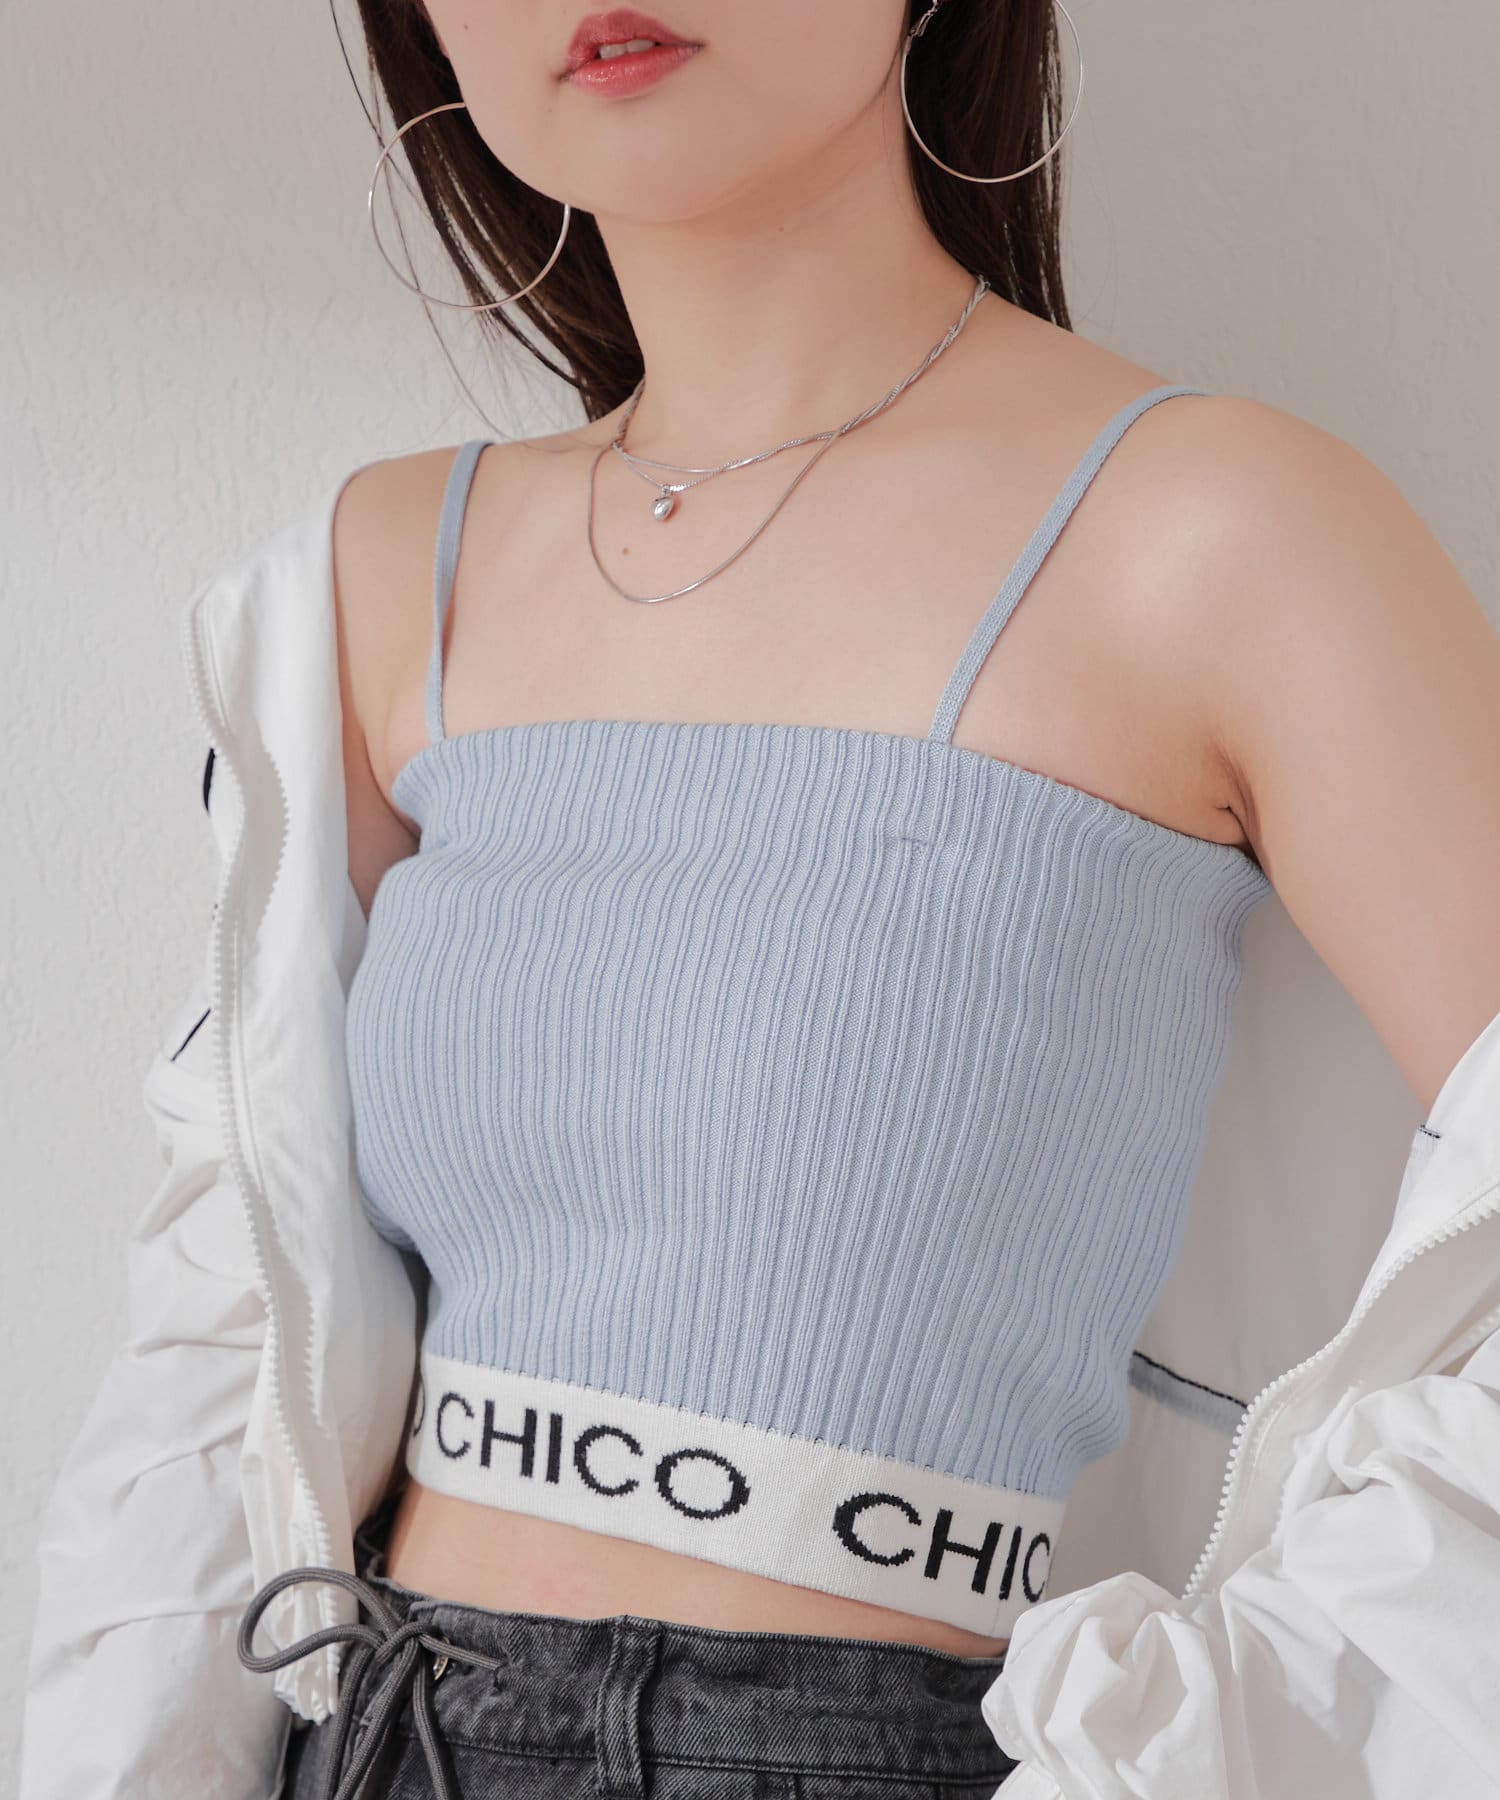 Chico(チコ) 【5色展開】裾ロゴベアキャミ